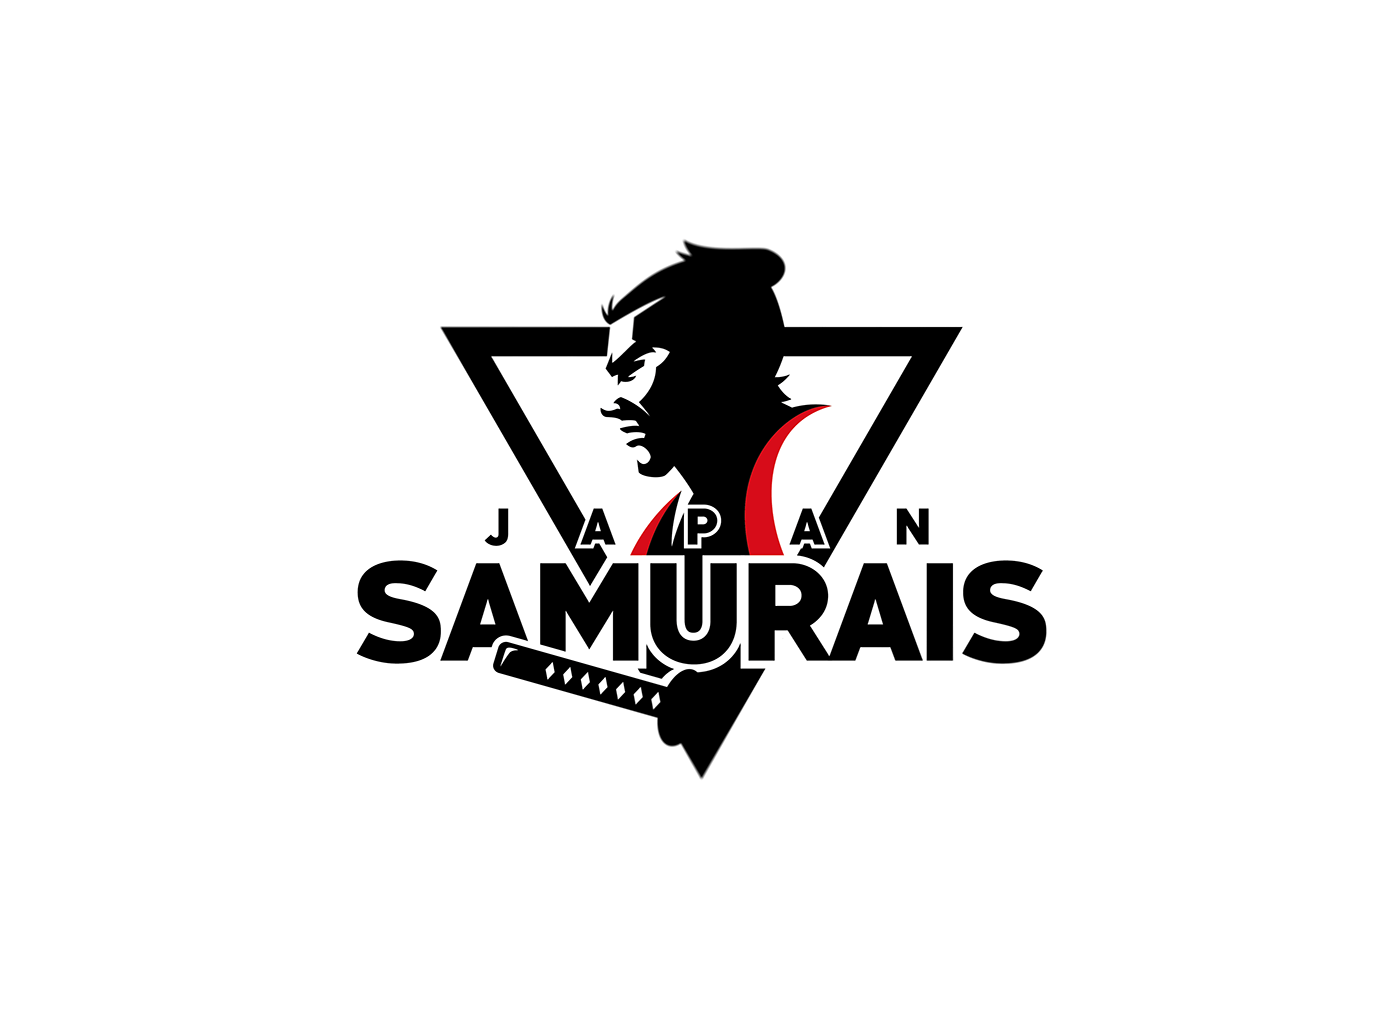 Japan Logo - AFL Japan Samurais logo on Behance